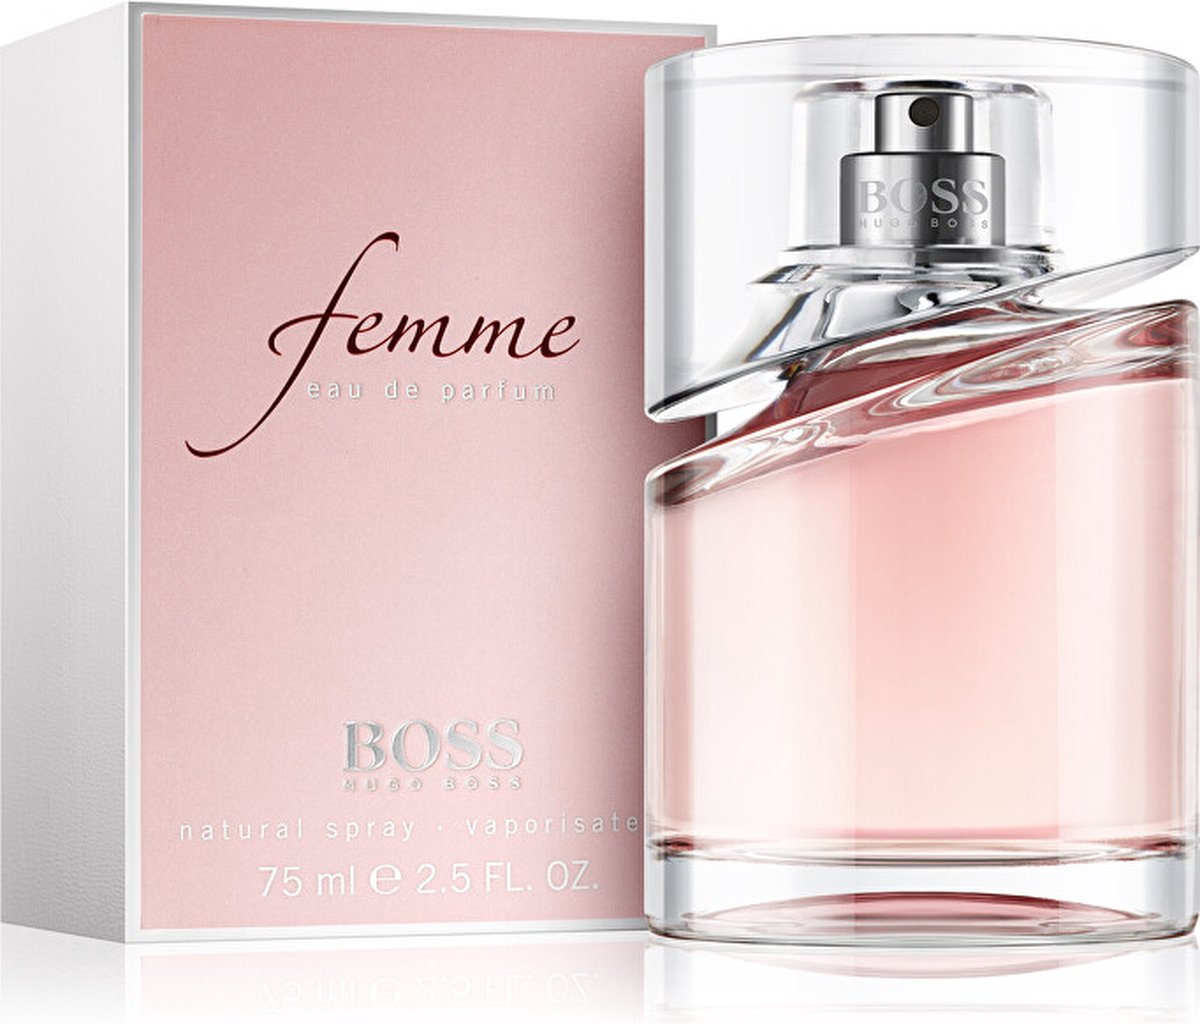 Ruim teer seinpaal Hugo Boss Femme 50 ml - Eau de Parfum - Damesparfum | bol.com